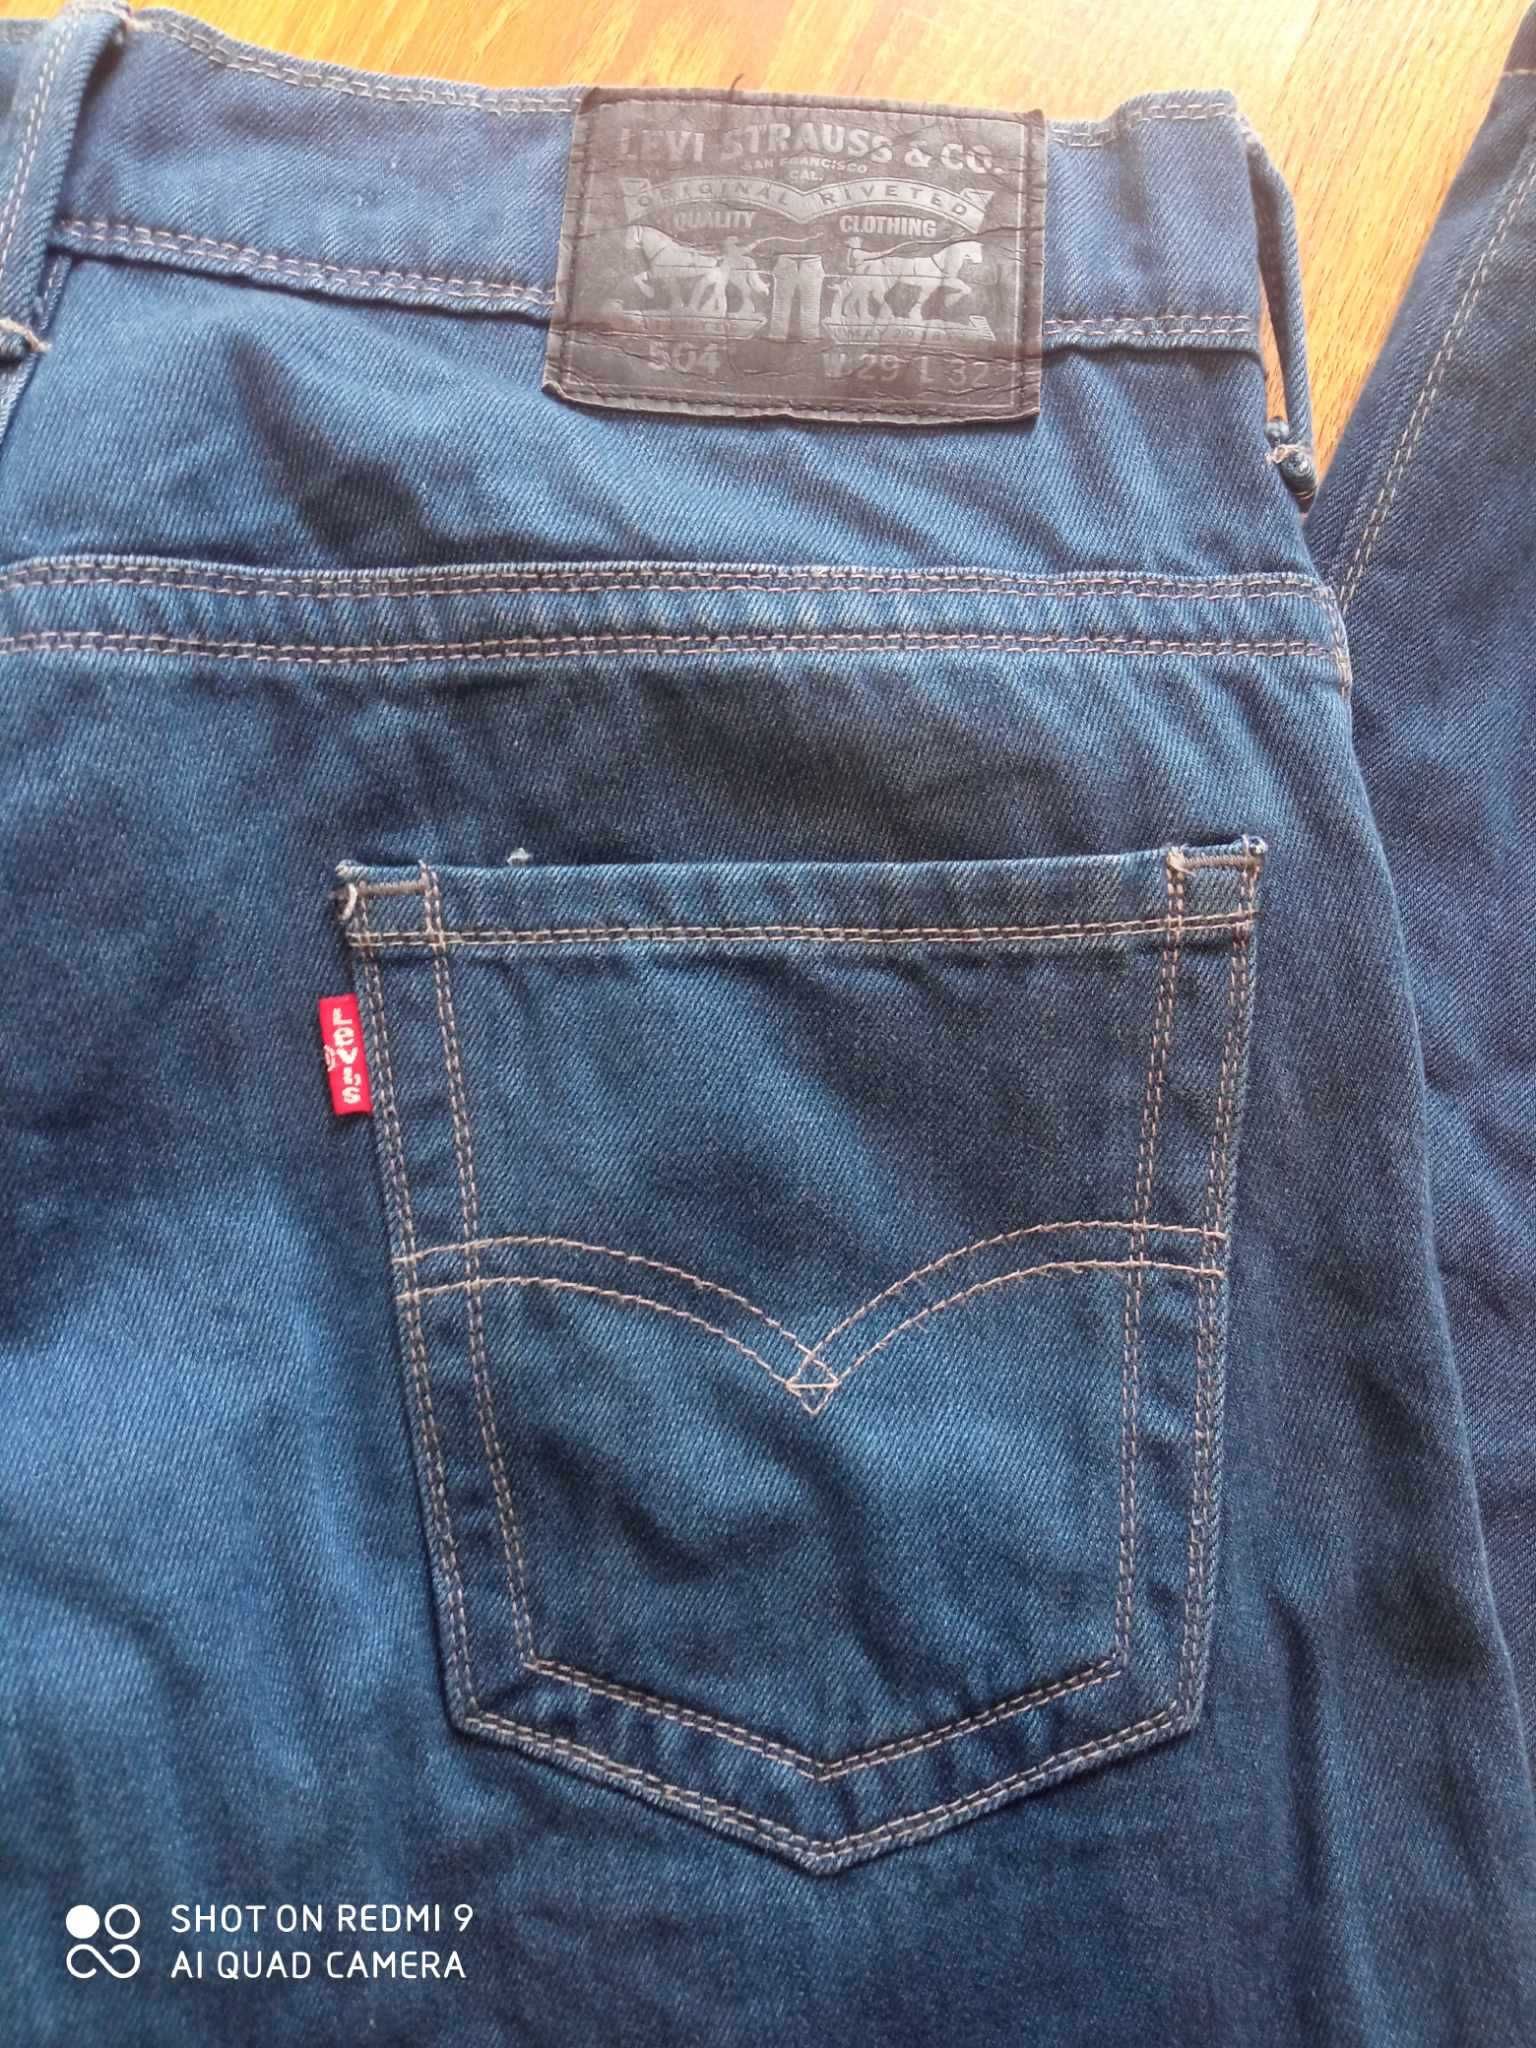 Spodnie męskie jeansy Levis Levi's 504 29/32 29x32 W29 L32 jak nowe